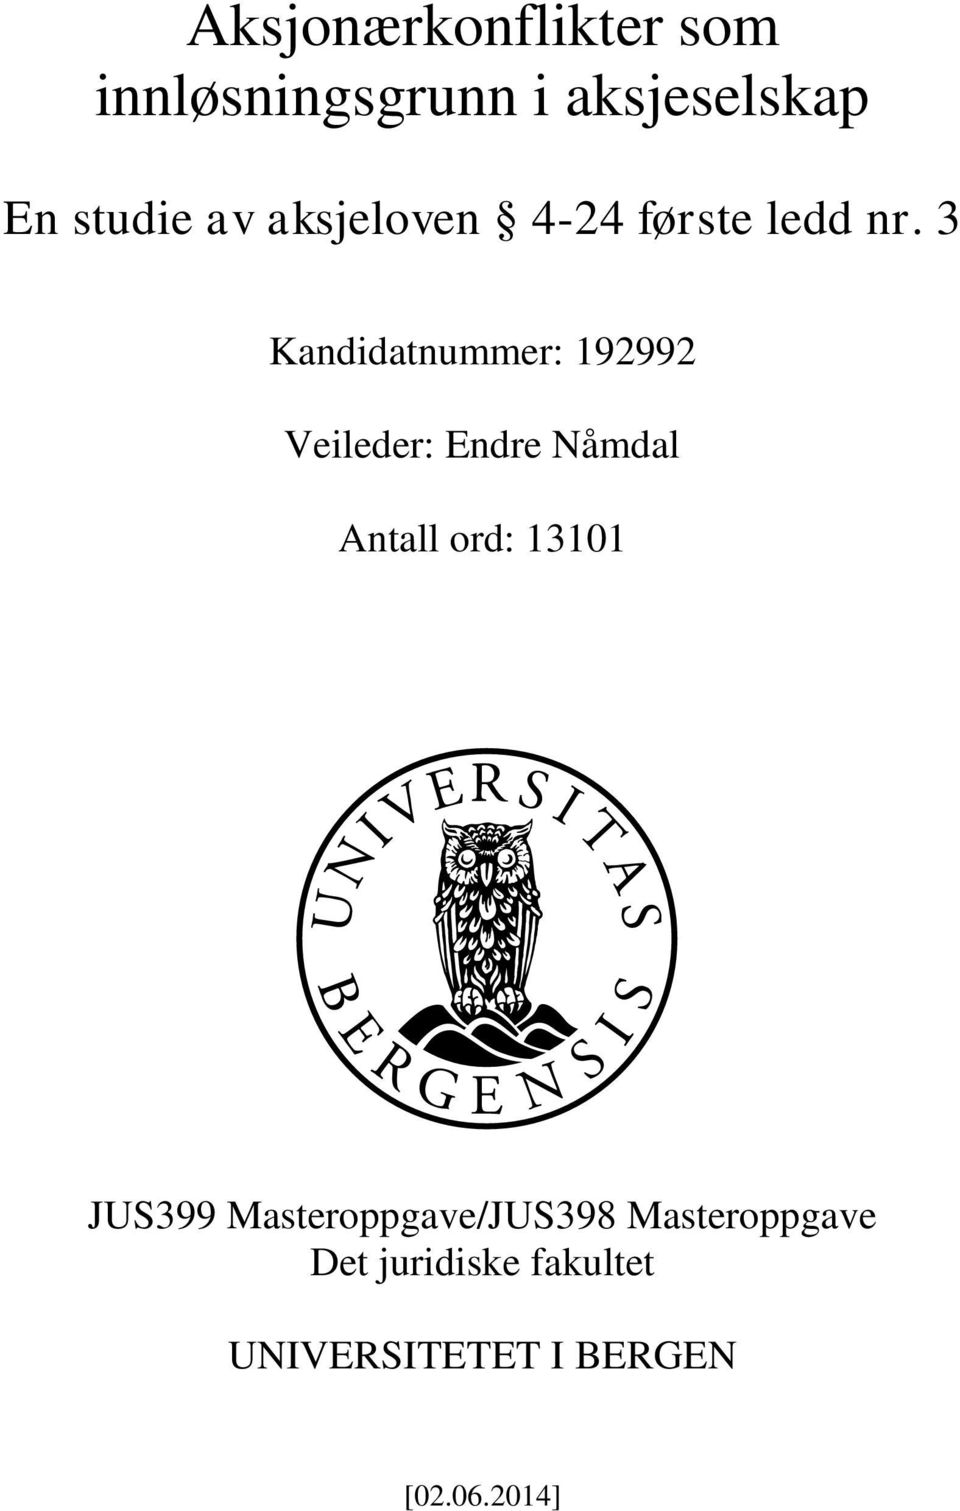 3 Kandidatnummer: 192992 Veileder: Endre Nåmdal Antall ord: 13101